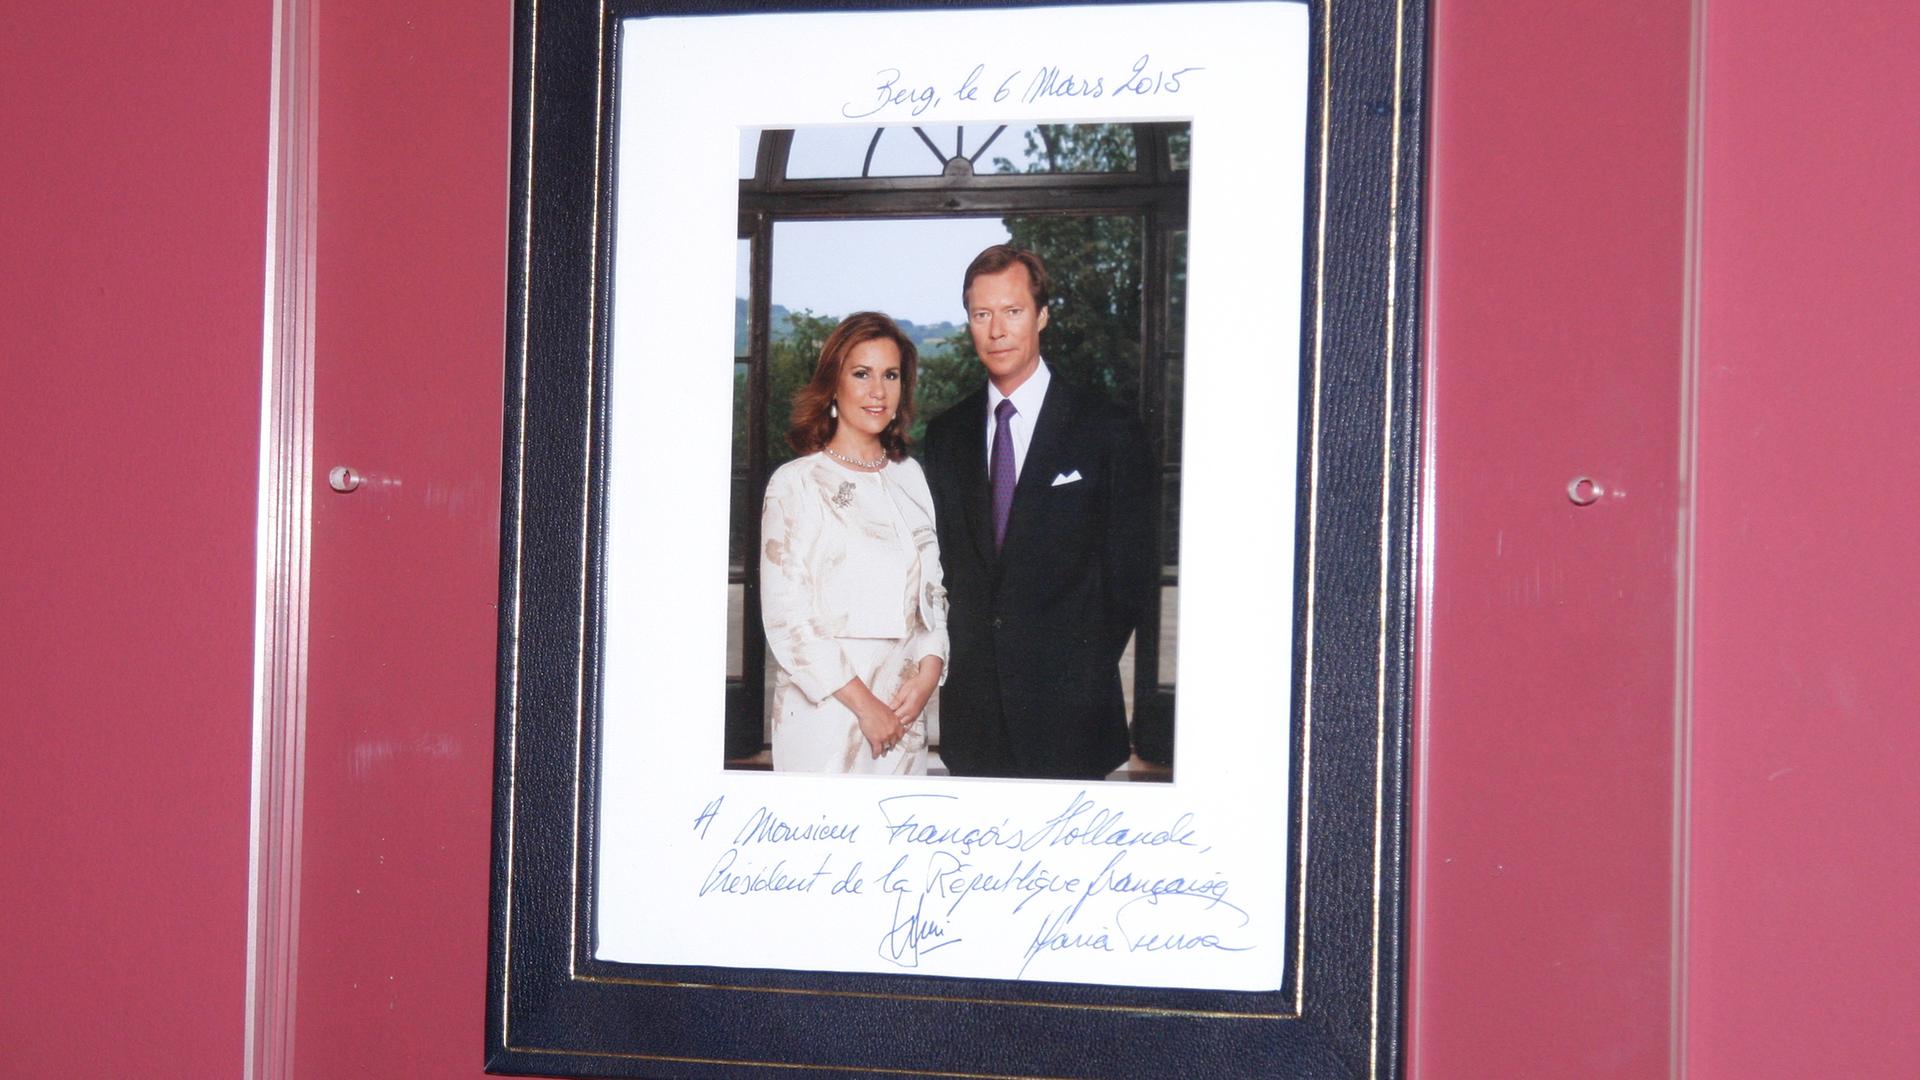 En repartant du Luxembourg l'an passé, le président Hollande avait cette photo dédicacée du couple grand-ducal dans ses valises.